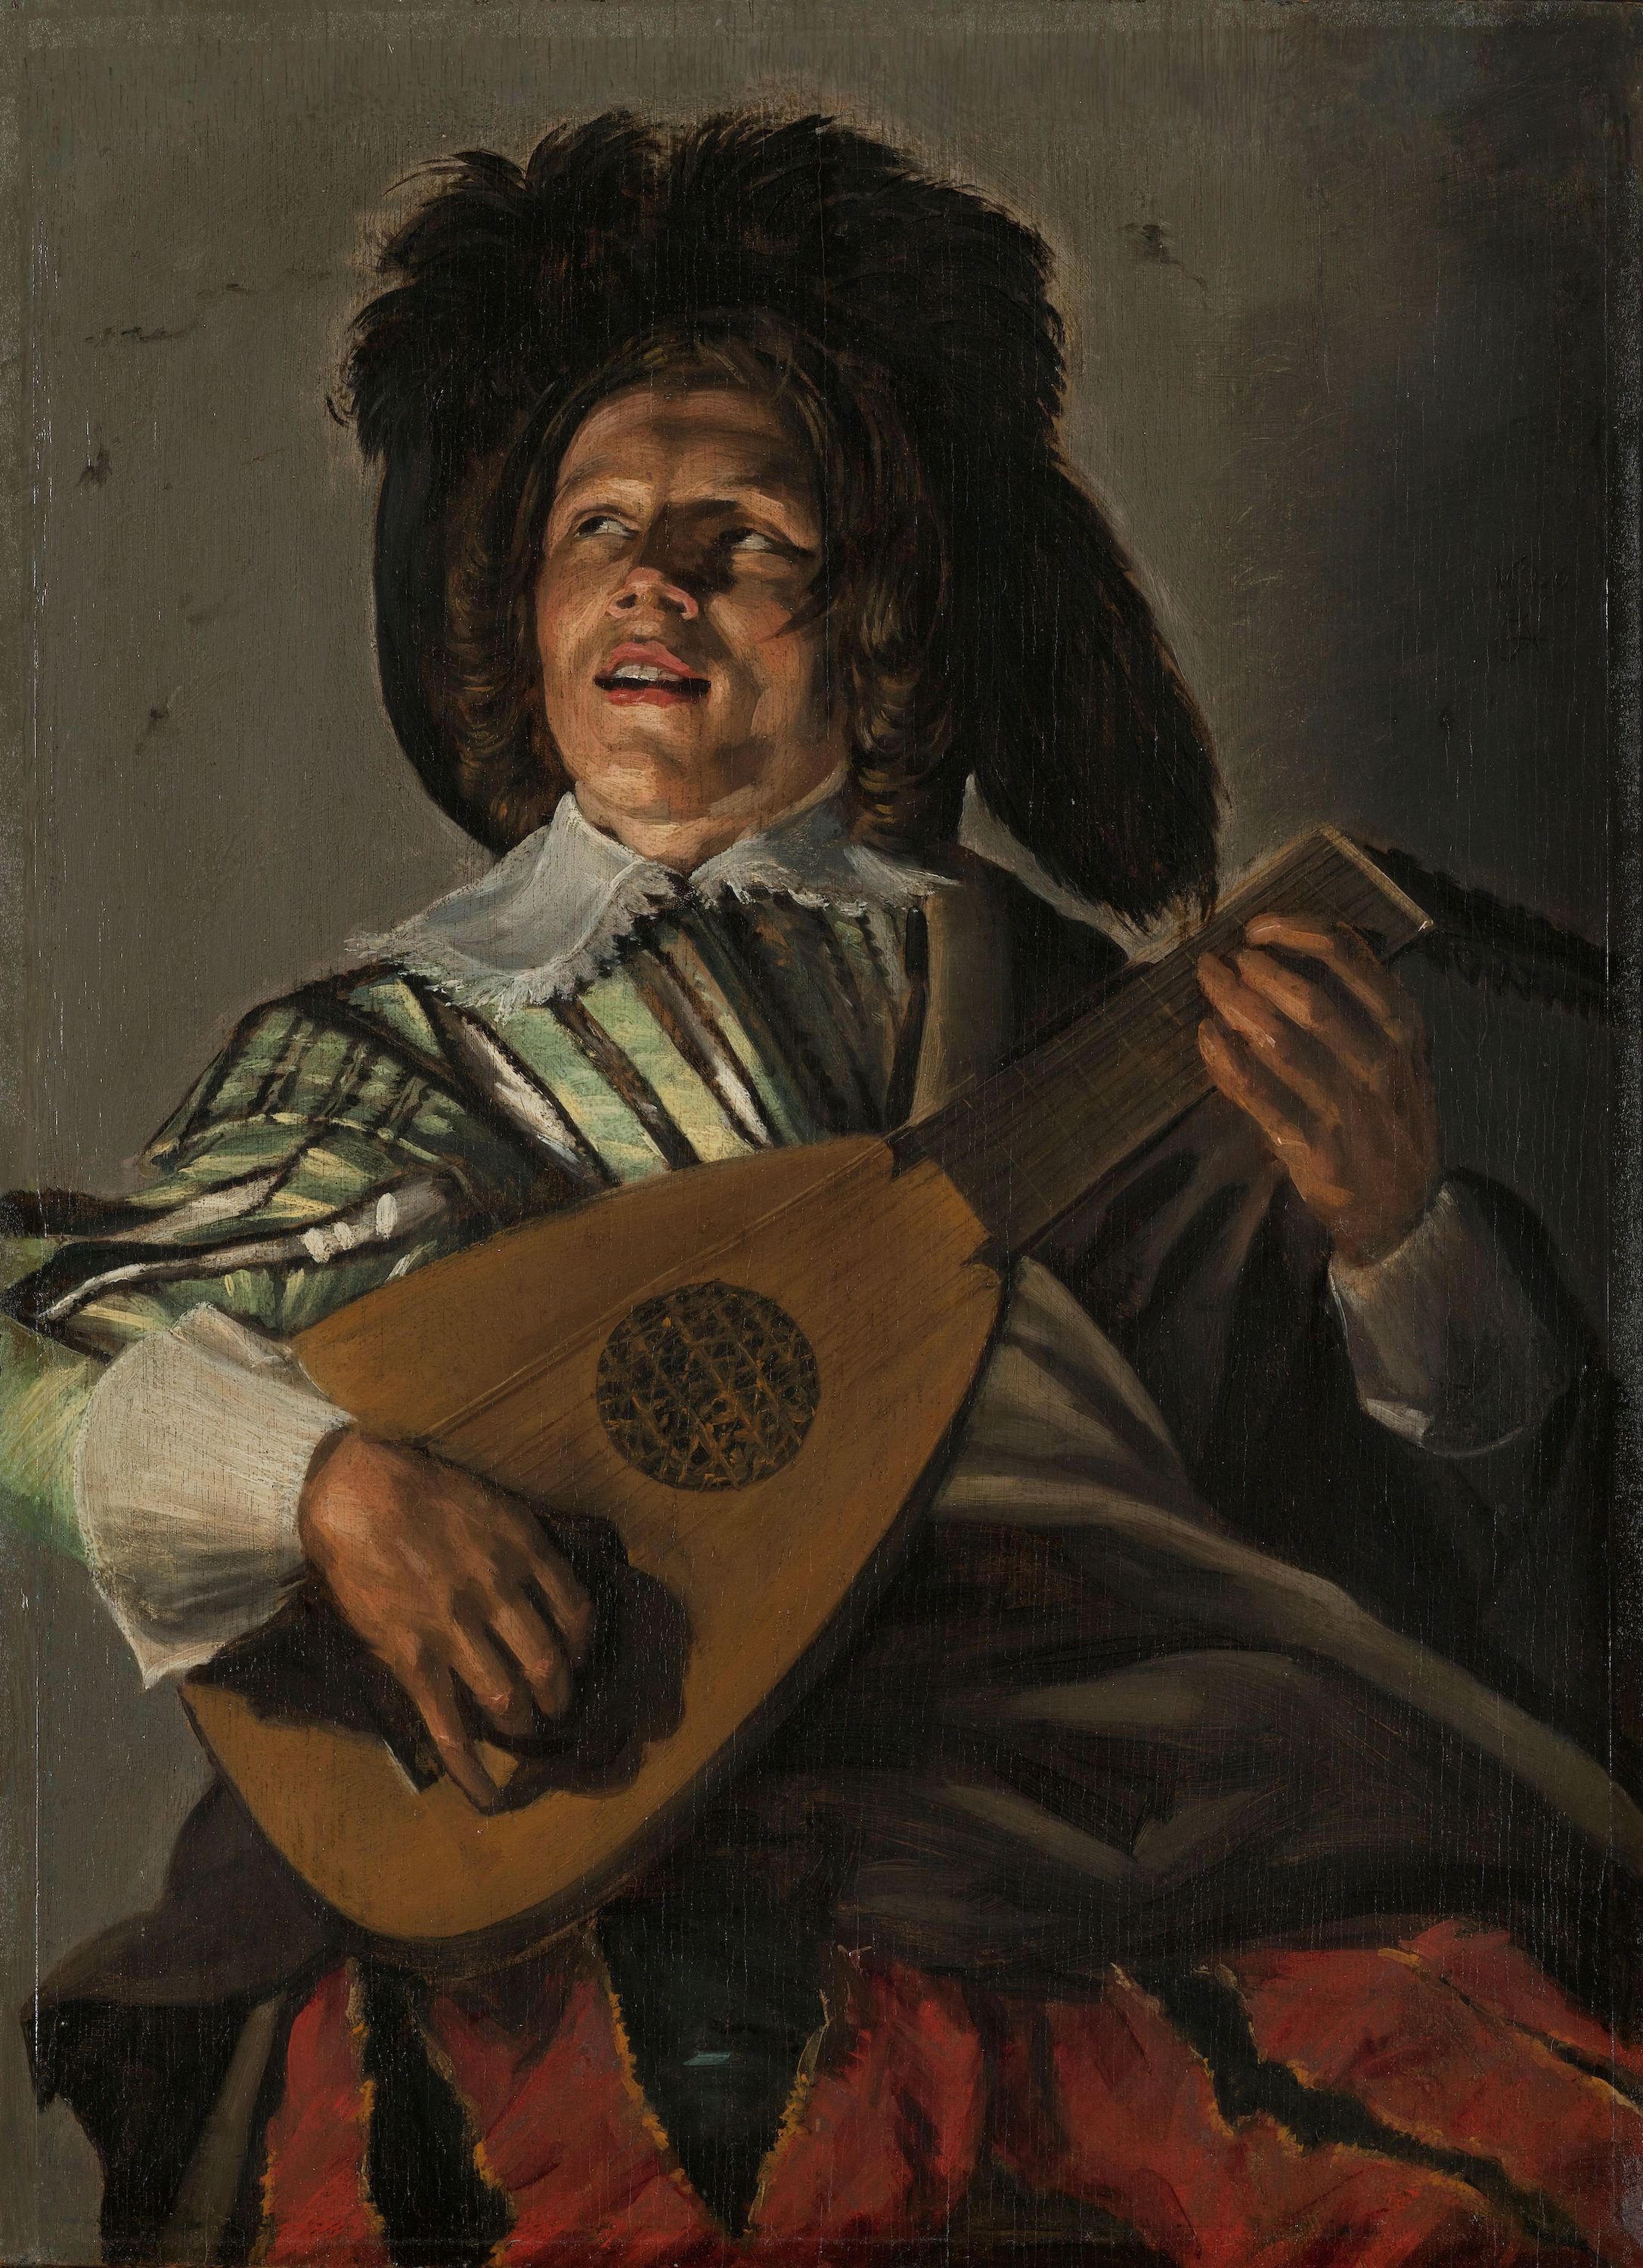 De Serenade by Judith Leyster - 1629 - 45,5 cm  x 35 cm Rijksmuseum